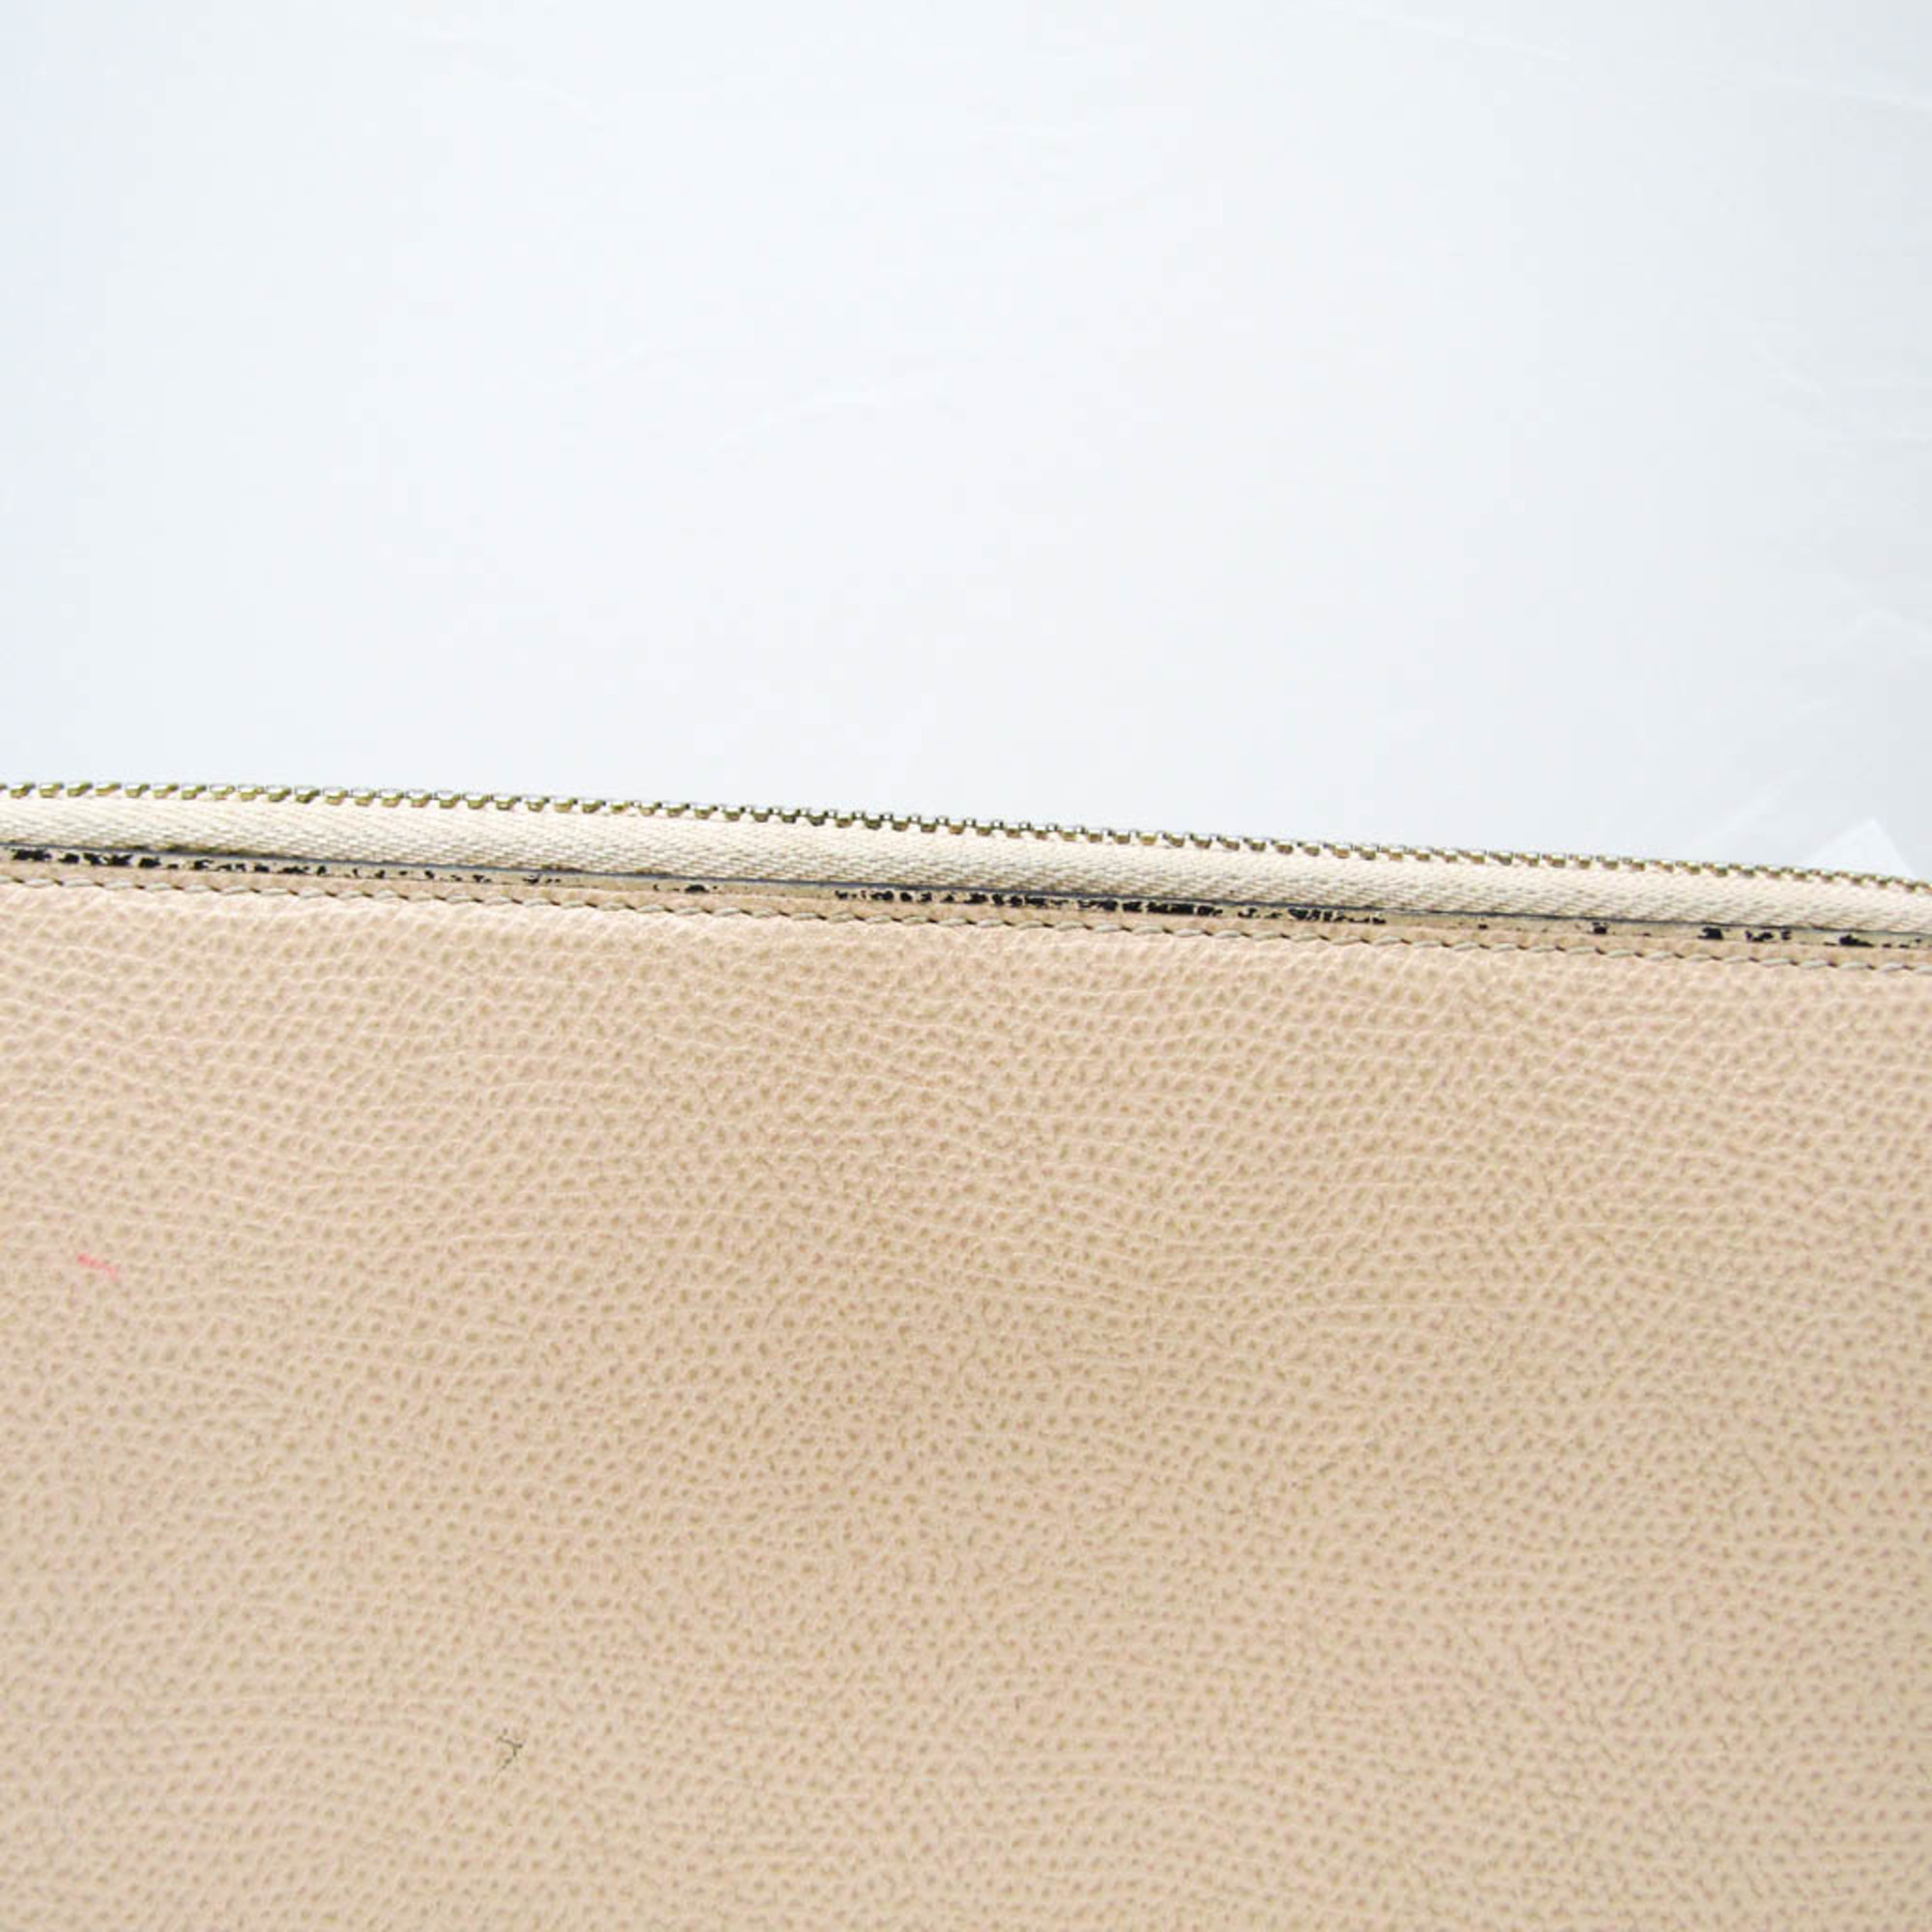 Valextra Zip Purse 12 Card V9L21 Women's Leather Long Wallet (bi-fold) Pink Beige